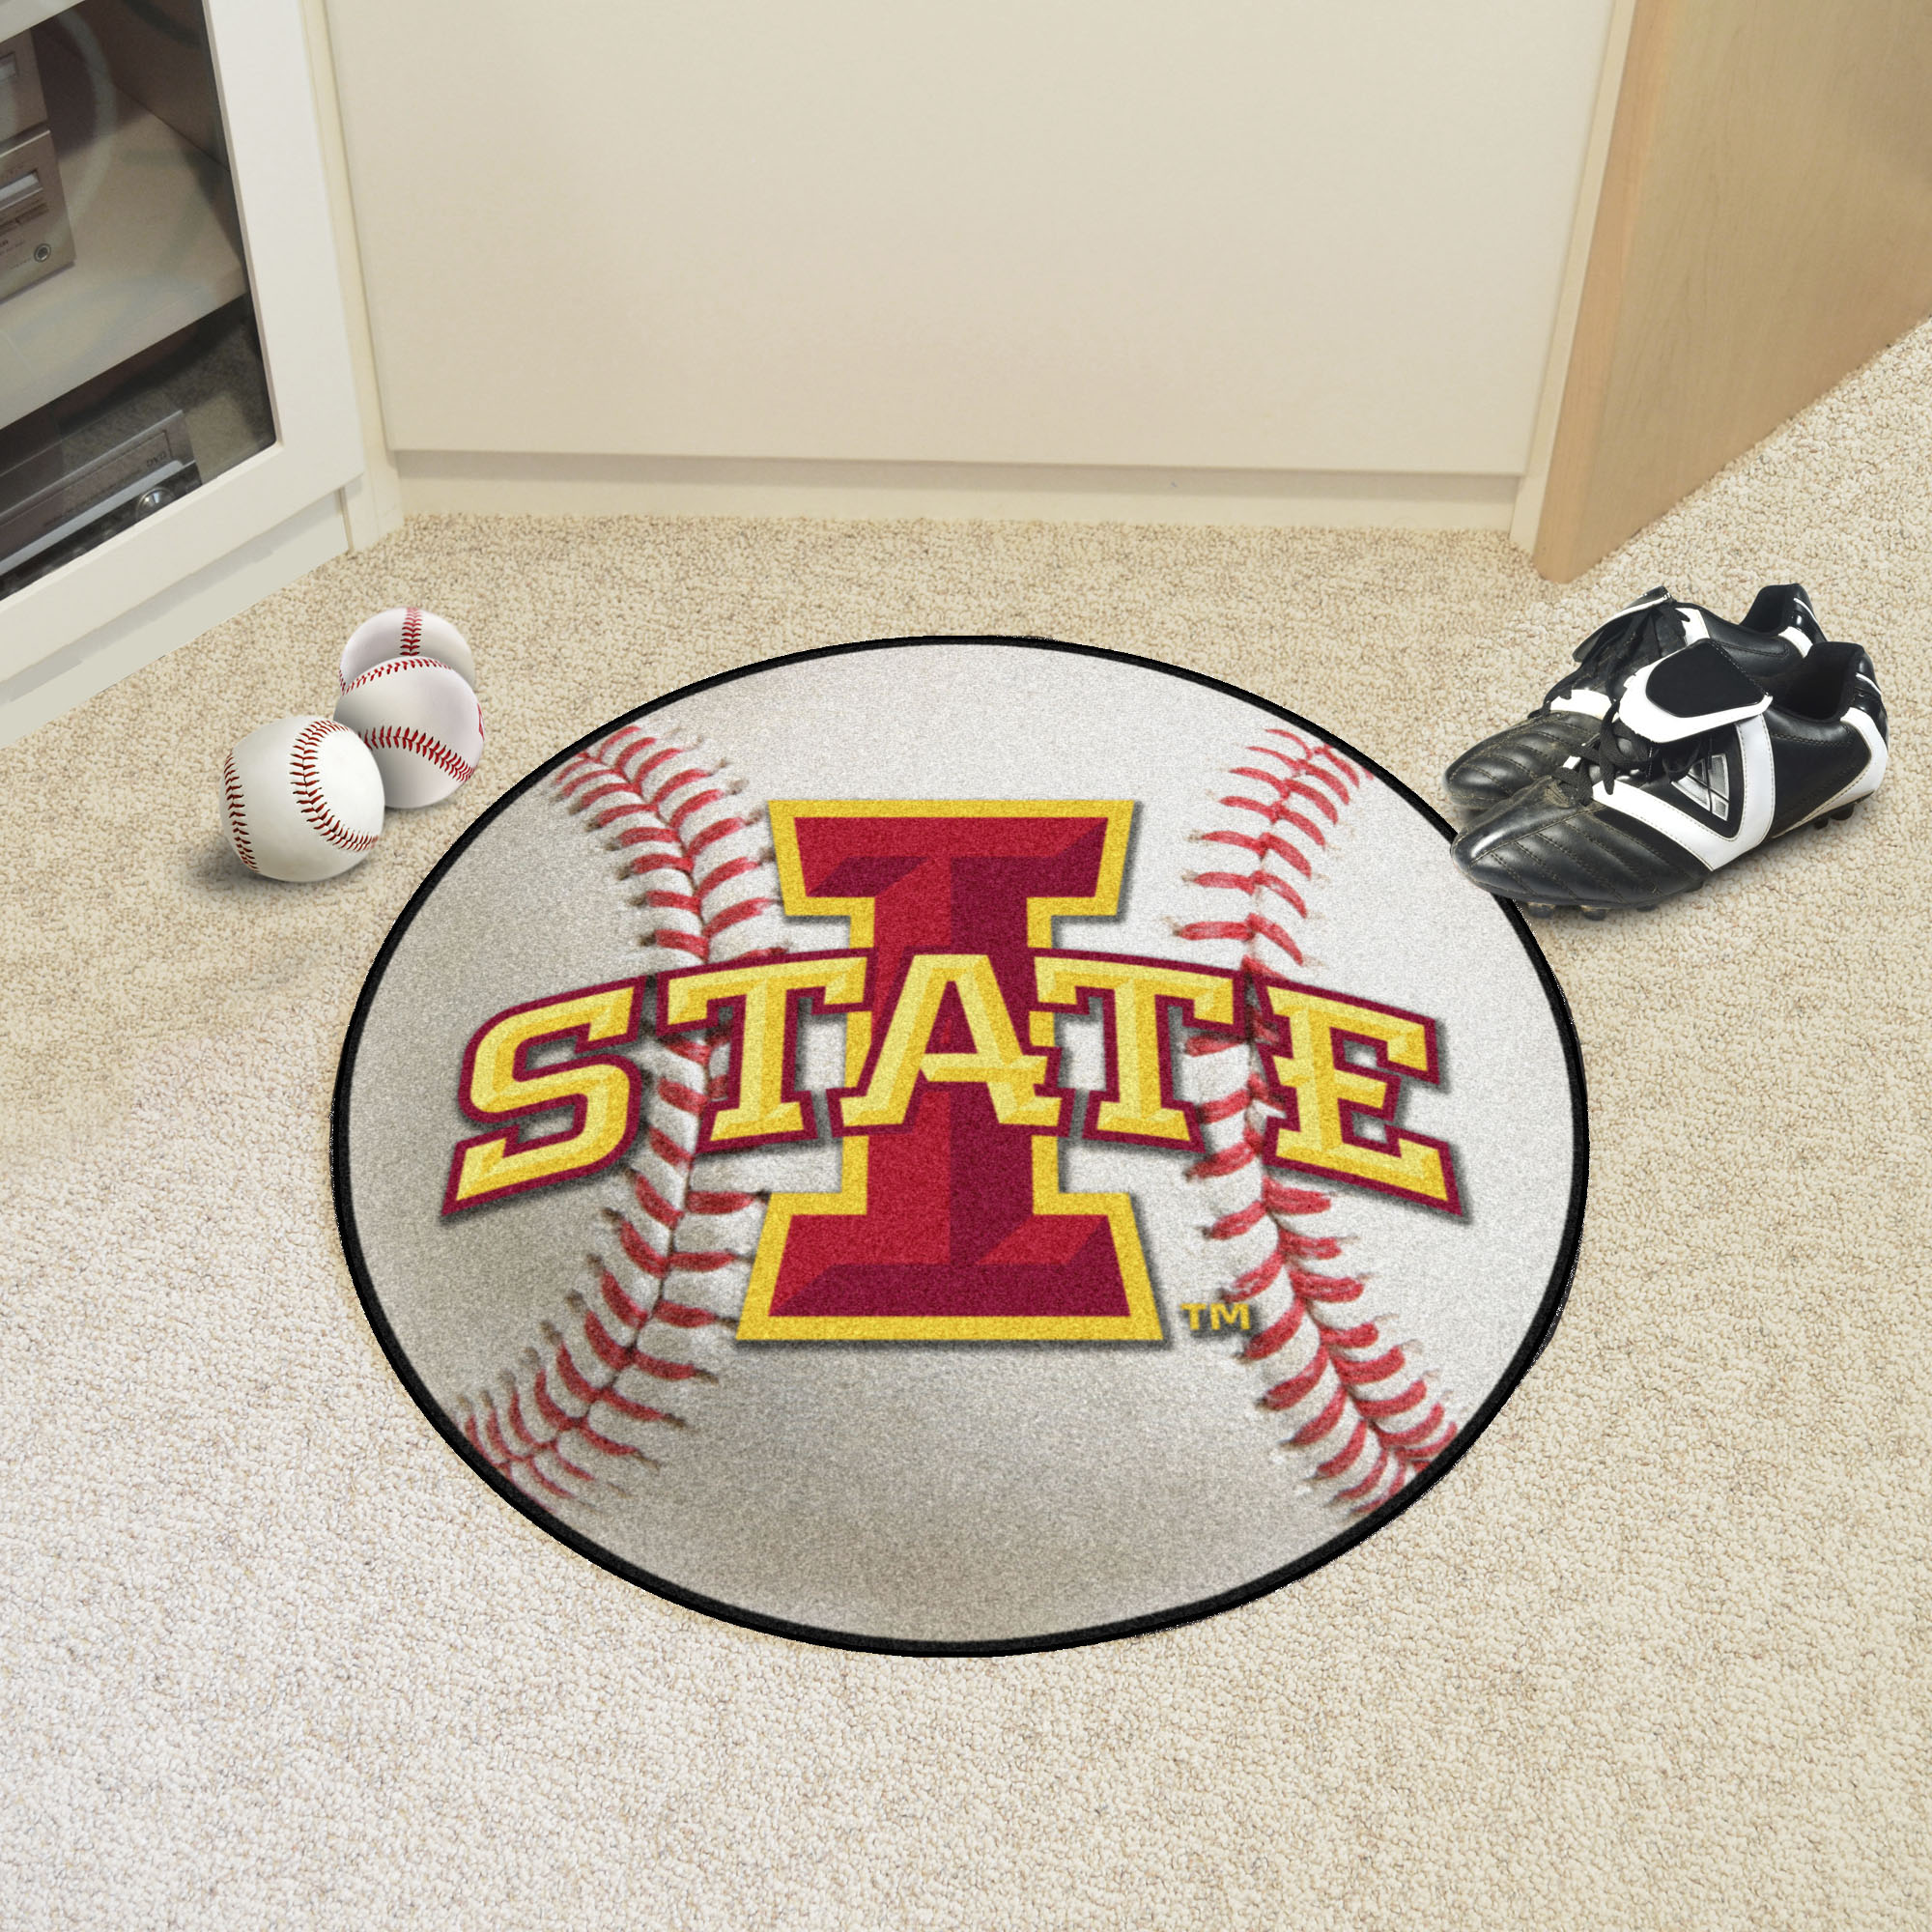 Iowa State University Ball-Shaped Area Rugs (Ball Shaped Area Rugs: Baseball)